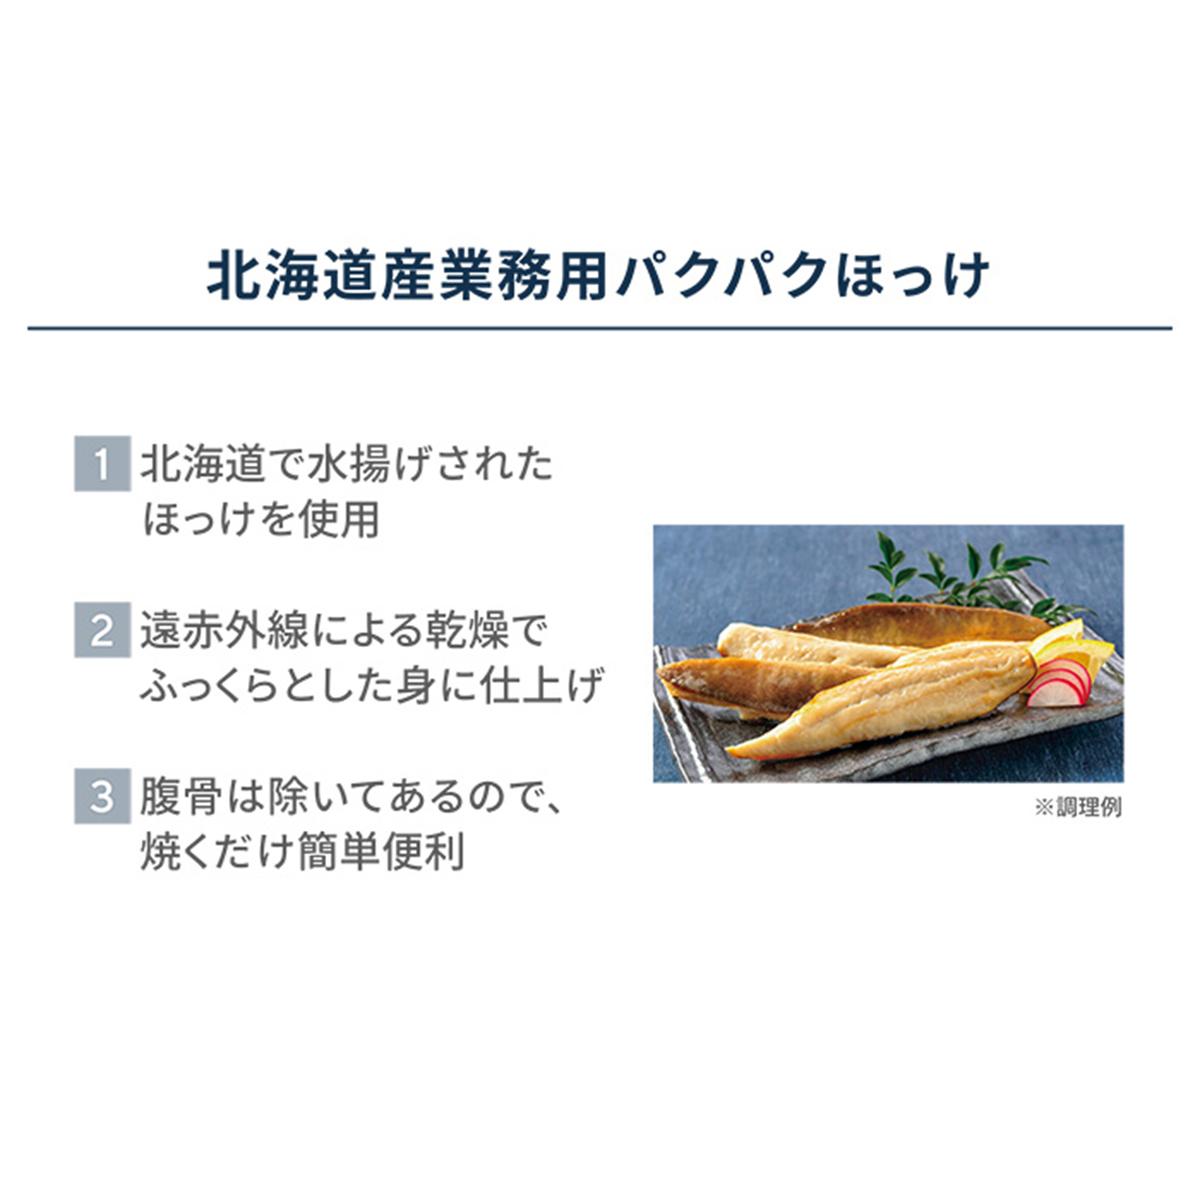 北海道産業務用パクパクほっけ500g 3 Jaグループ 全農食品 No Qvc Jp